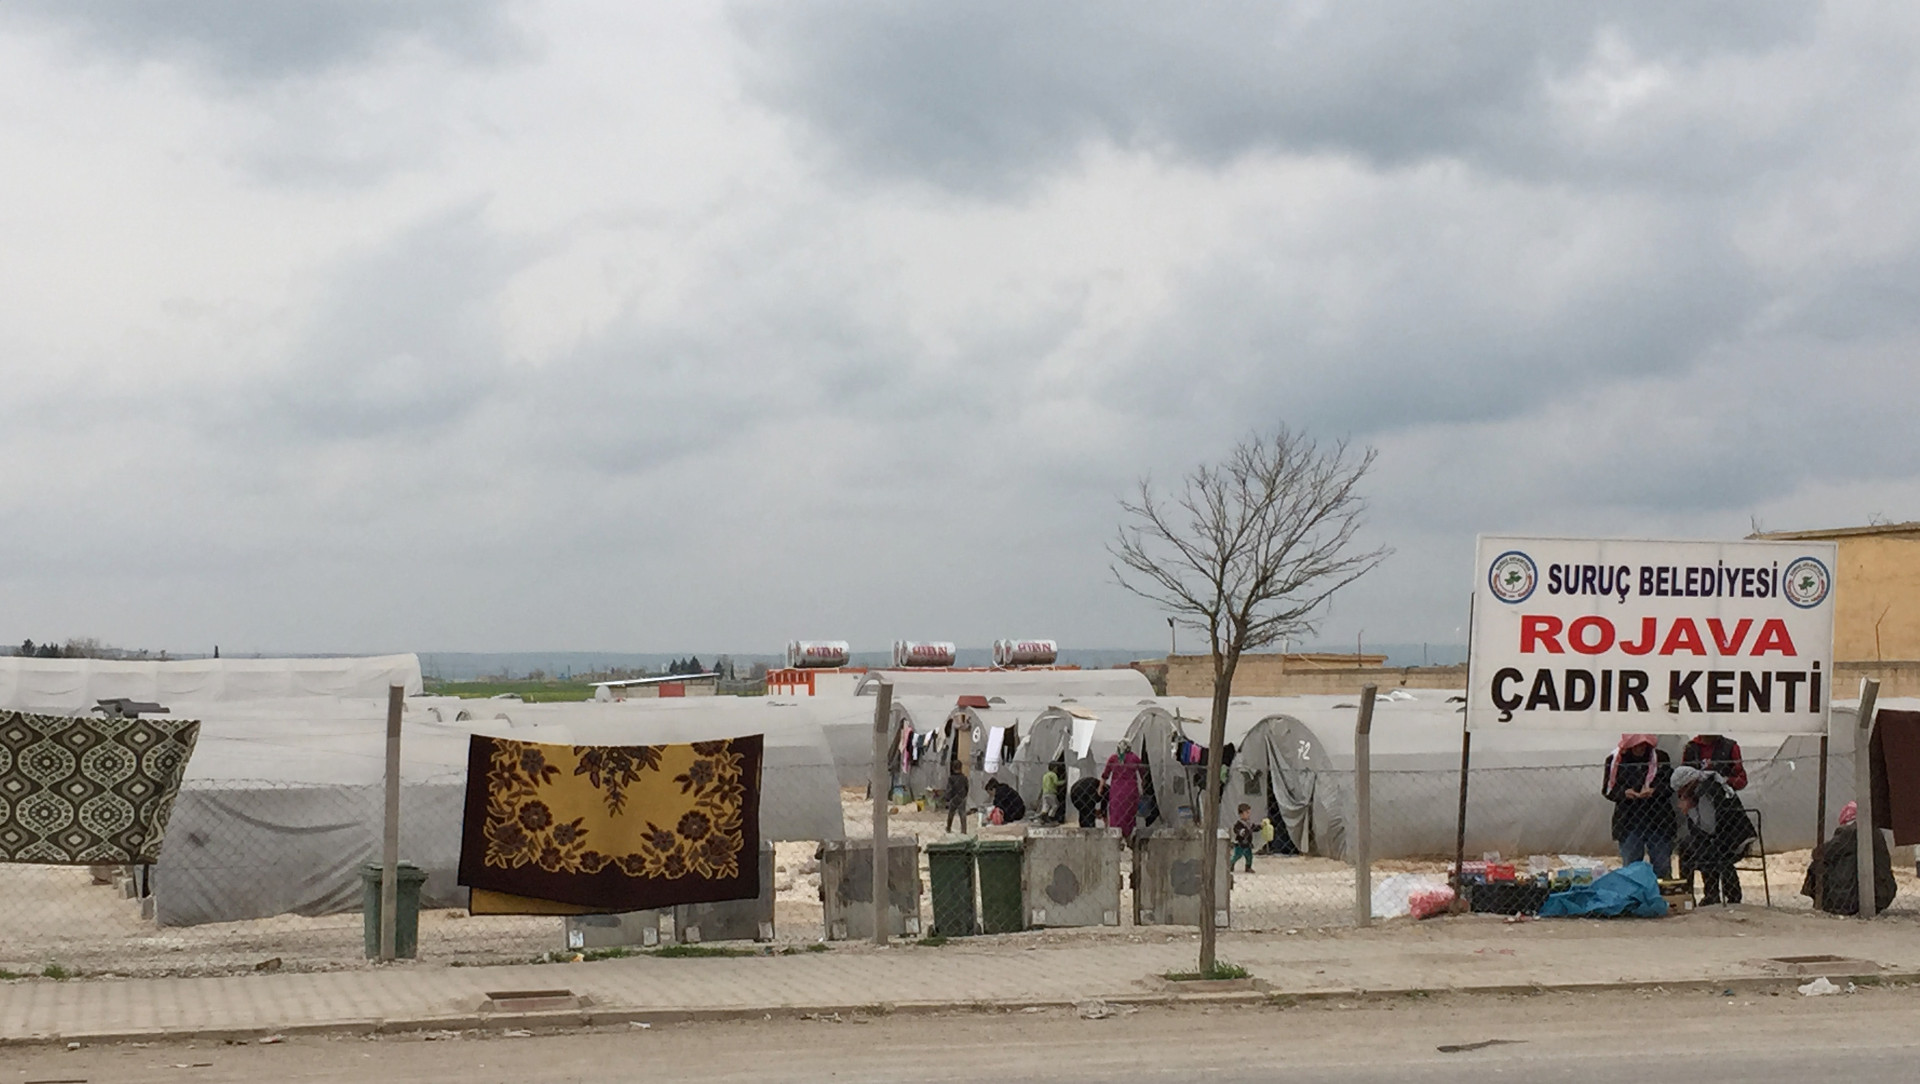 Kurdisches Flüchtlingslager in der Türkei